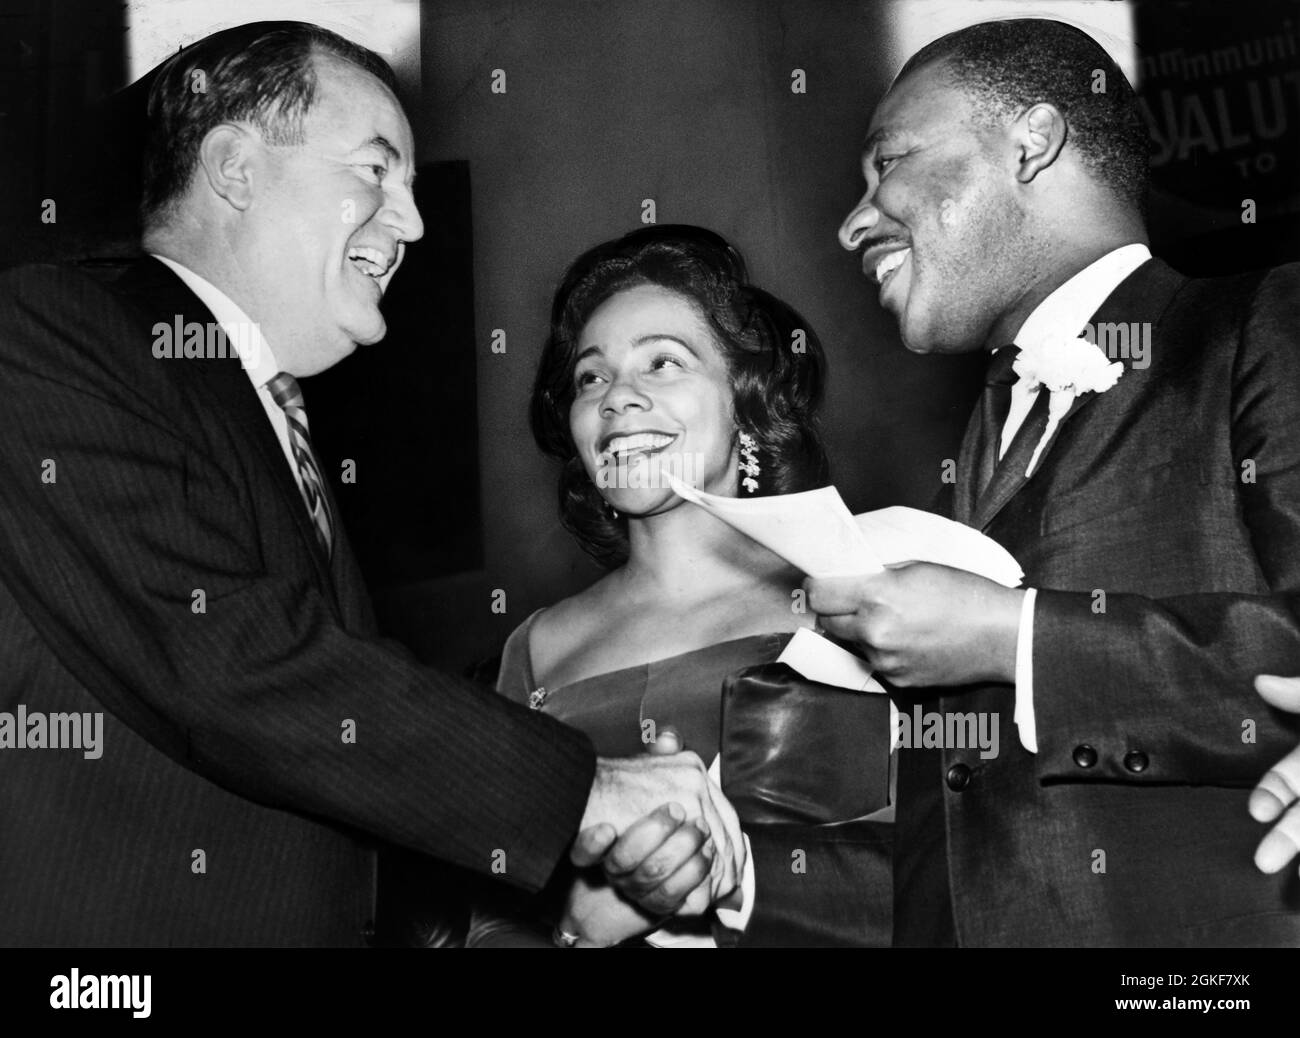 Hubert Humphrey, vice-président américain élu, se met à serrer la main avec le Dr King, alors que Mme King s'occupe du rallye, 369e Régiment Armory, Harlem, New York City, New York, USA, O. Fernandez, New York World-Telegram & Sun photo Collection, 17 décembre 1964 Banque D'Images